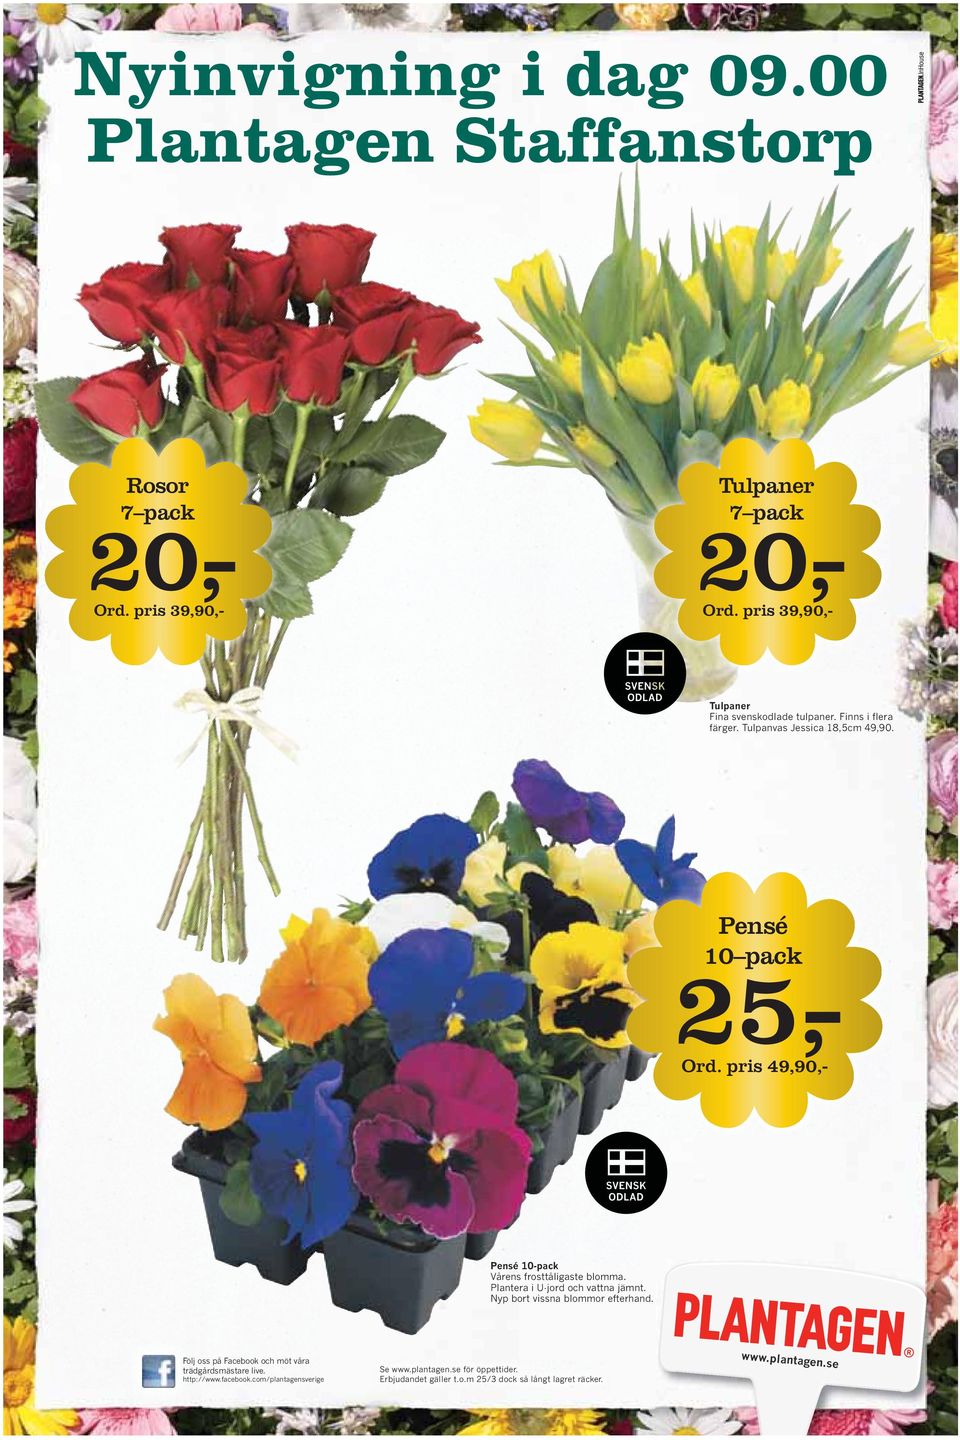 pris 49,90,- Pensé 10-pack Vårens frosttåligaste blomma. Plantera i U-jord och vattna jämnt. Nyp bort vissna blommor efterhand.